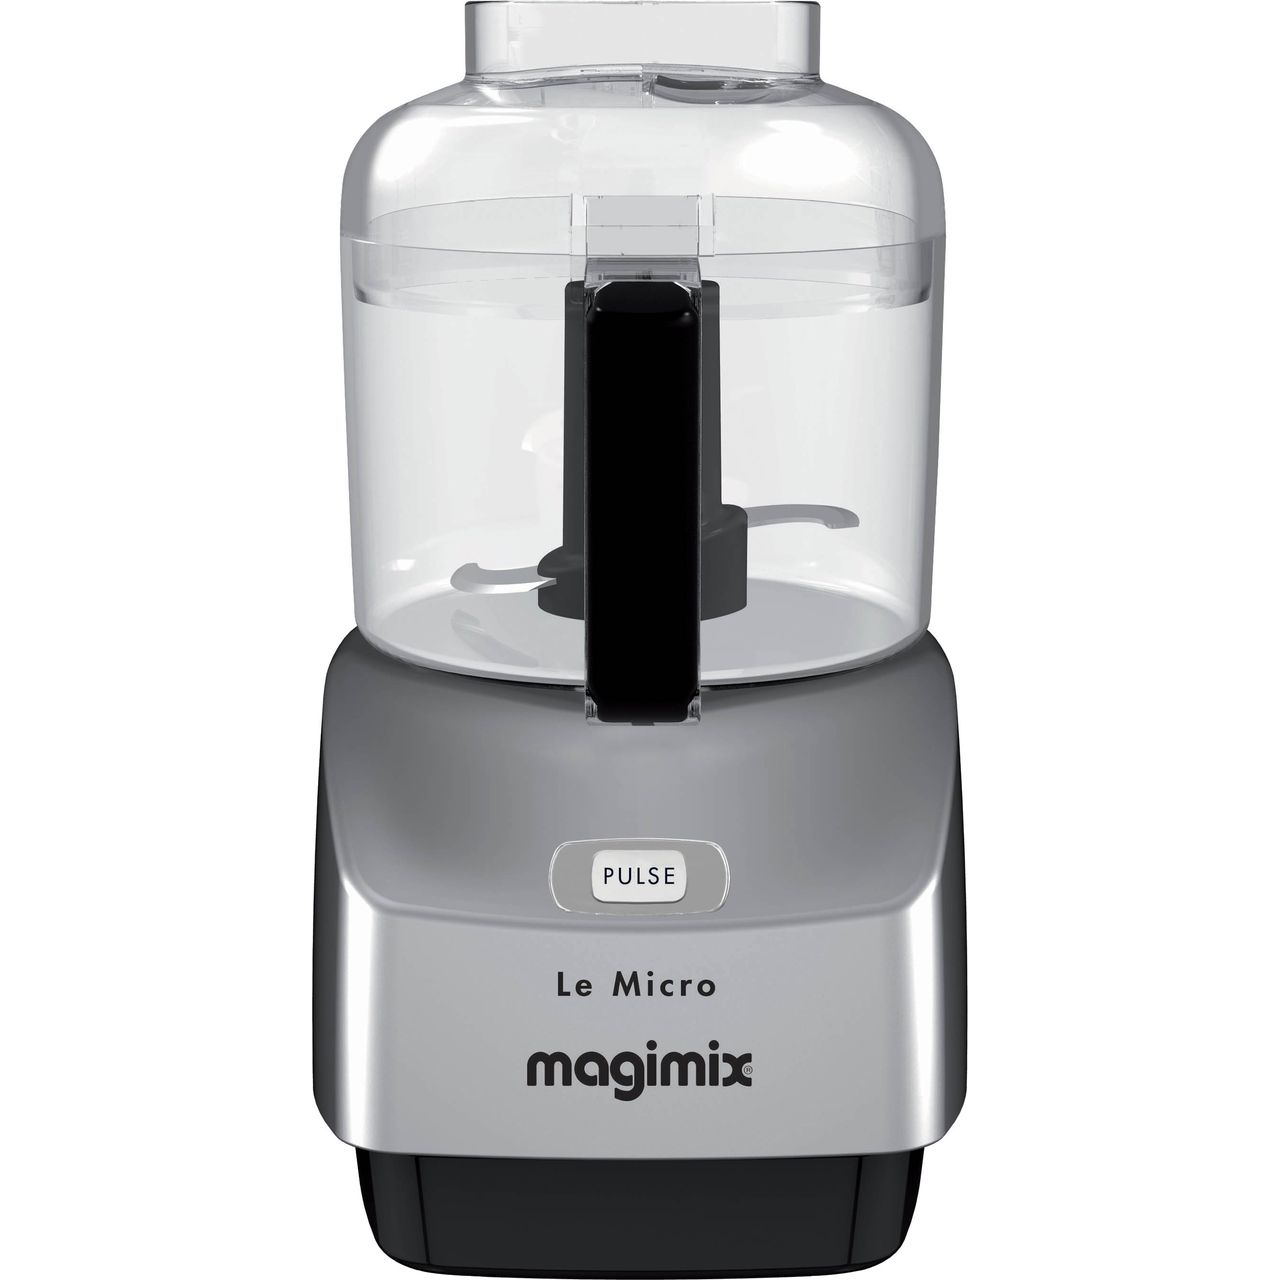 Magimix Le Micro 18115 290 Watt Mini Food Processor Review